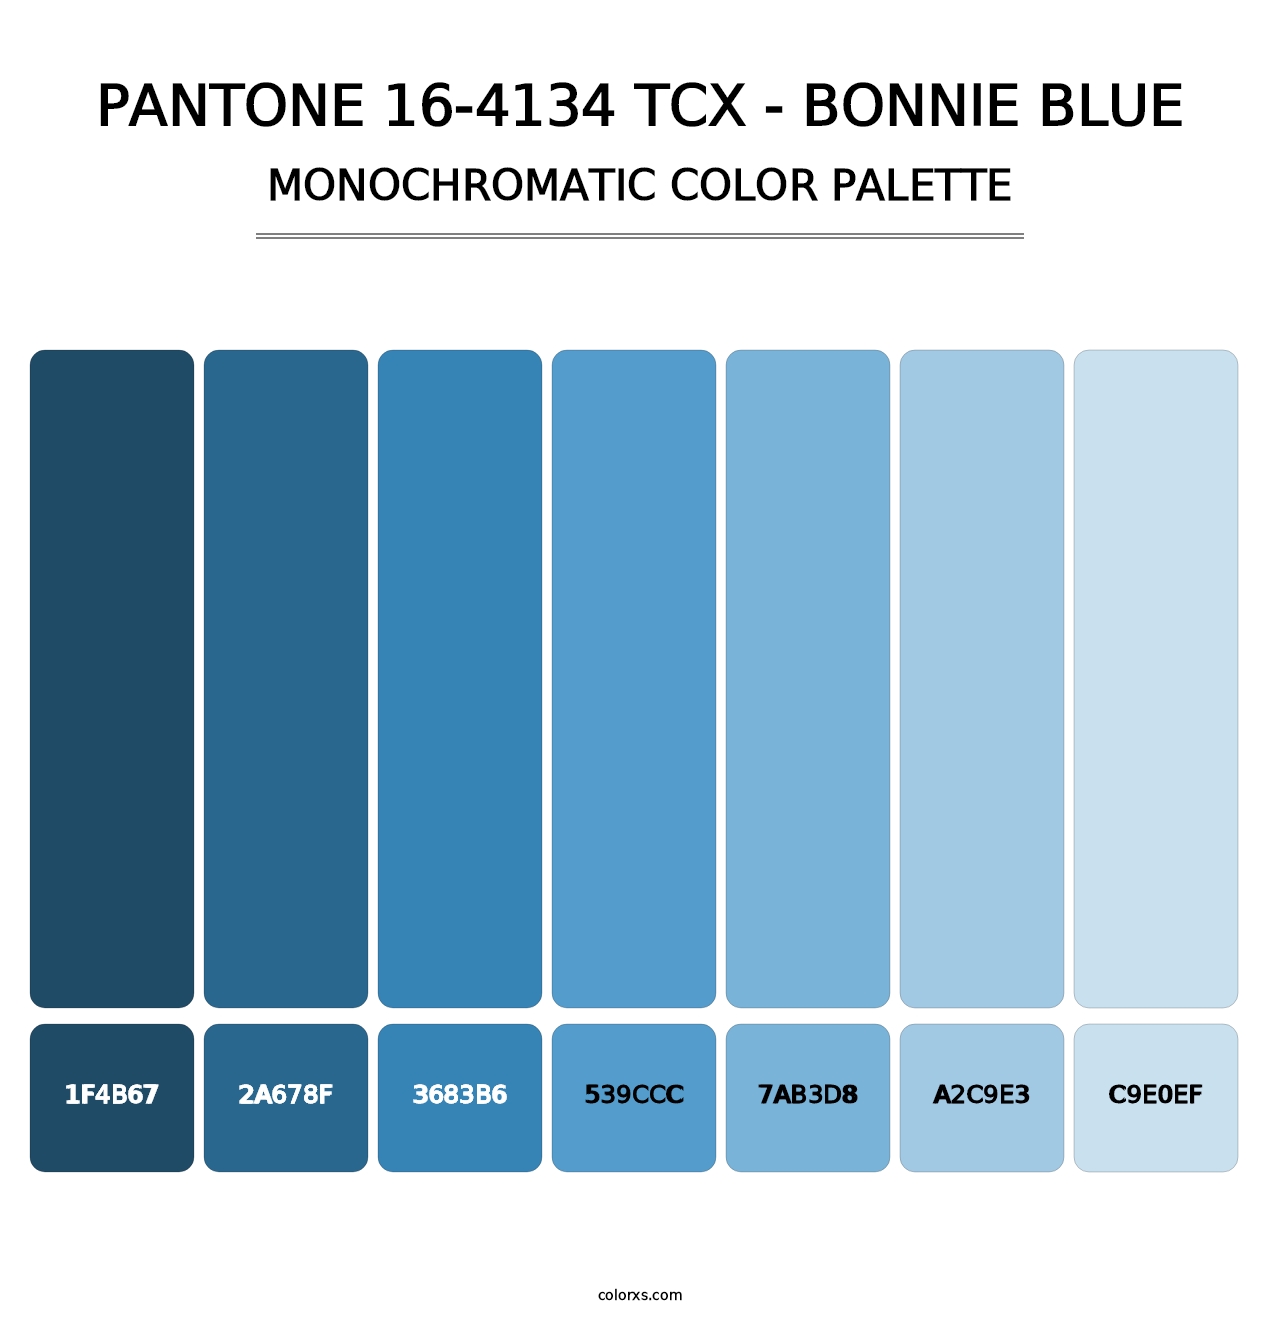 PANTONE 16-4134 TCX - Bonnie Blue - Monochromatic Color Palette